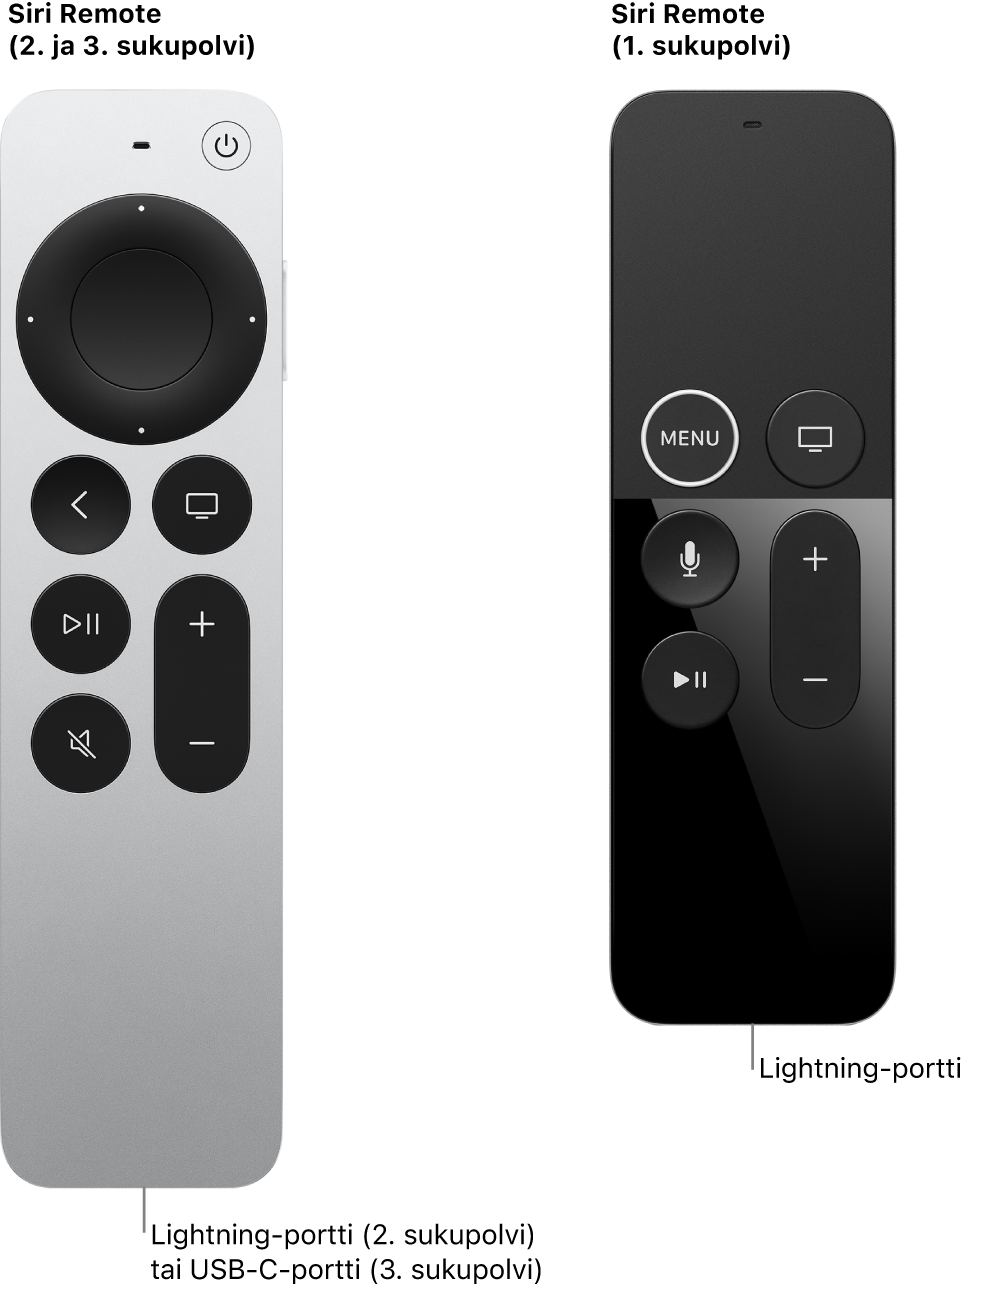 Kuva Siri Remote -kaukosäätimestä (2. ja 3. sukupolvi) ja Siri Remote -kaukosäätimestä (1. sukupolvi), jossa näkyy liitäntä